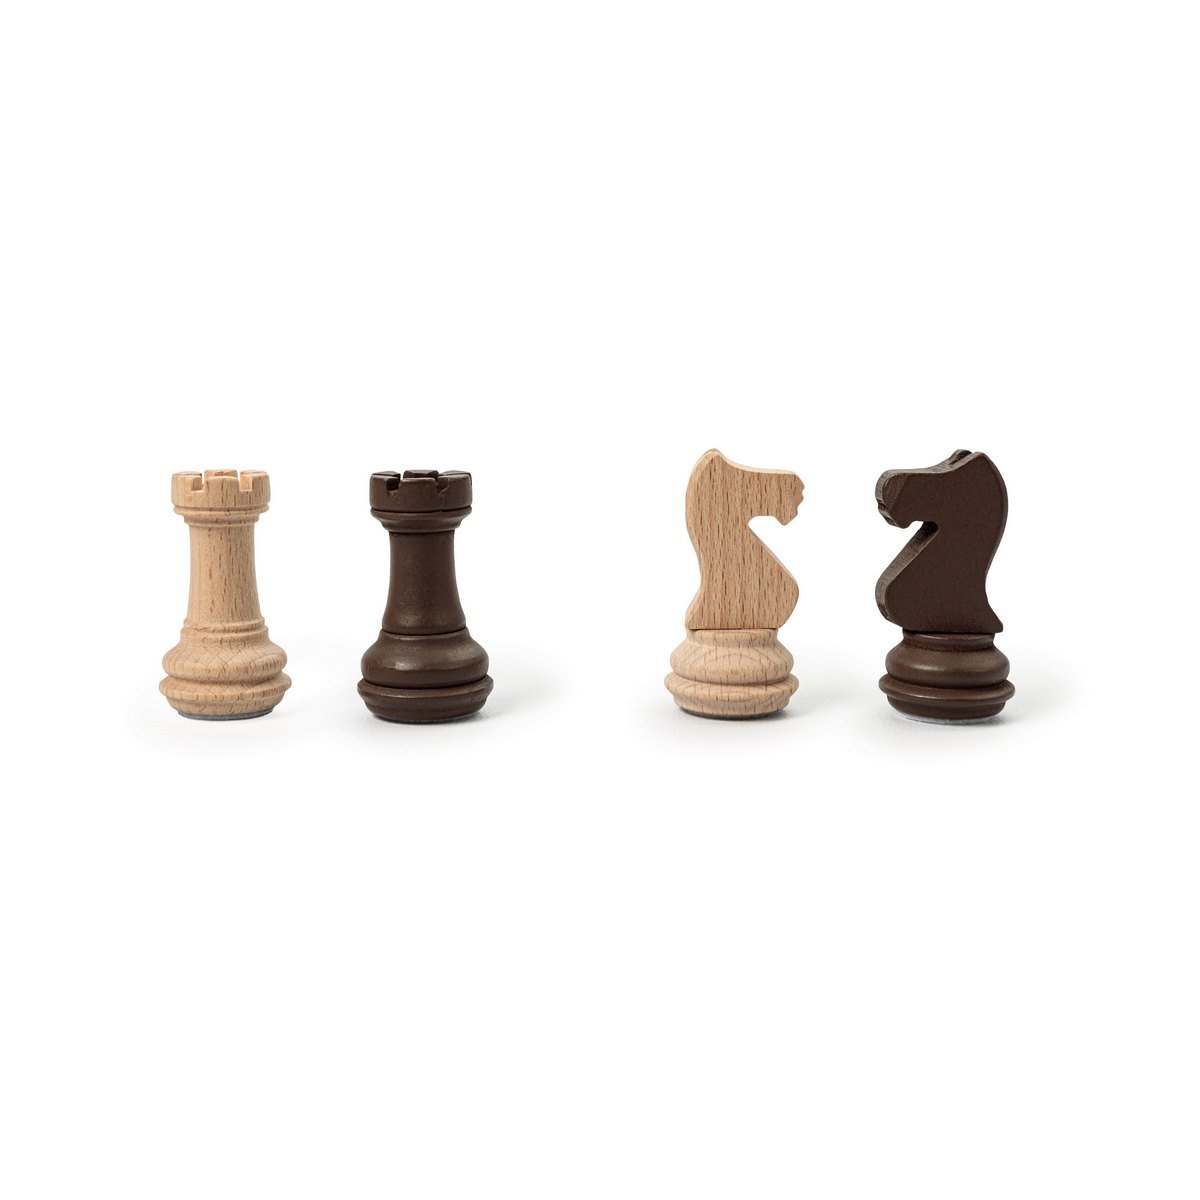 Construire un jeu d'échecs, un jeu de société monopoly, un jeu